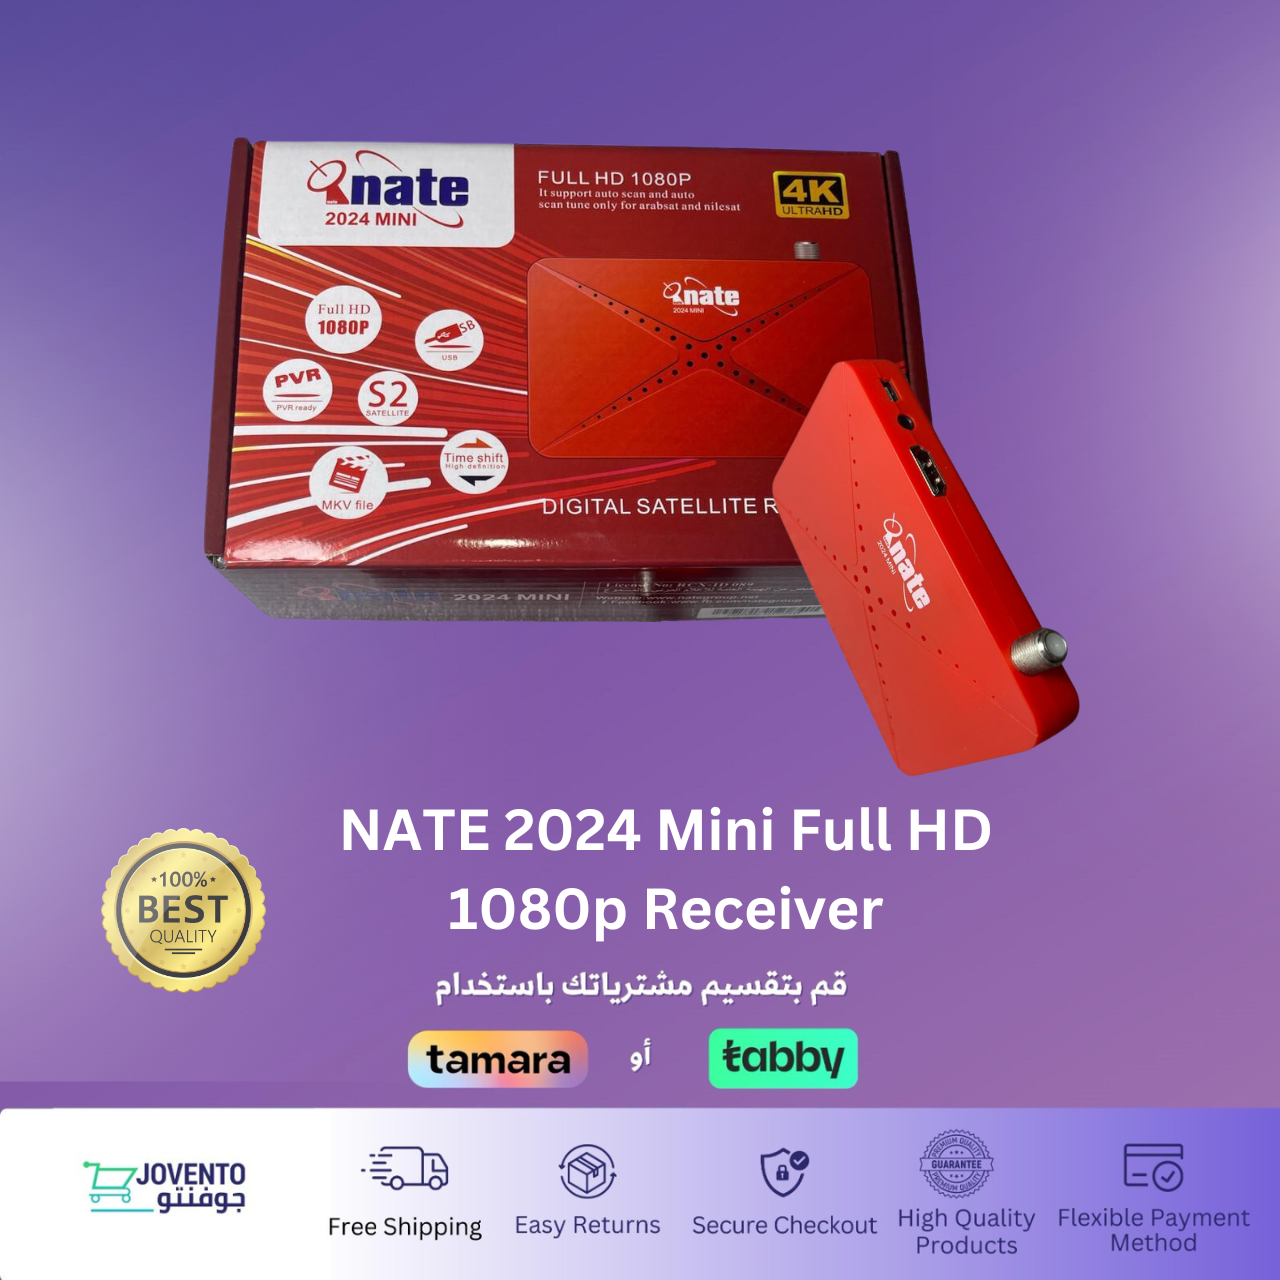 NATE 2024 Mini Full HD 1080p Receiver